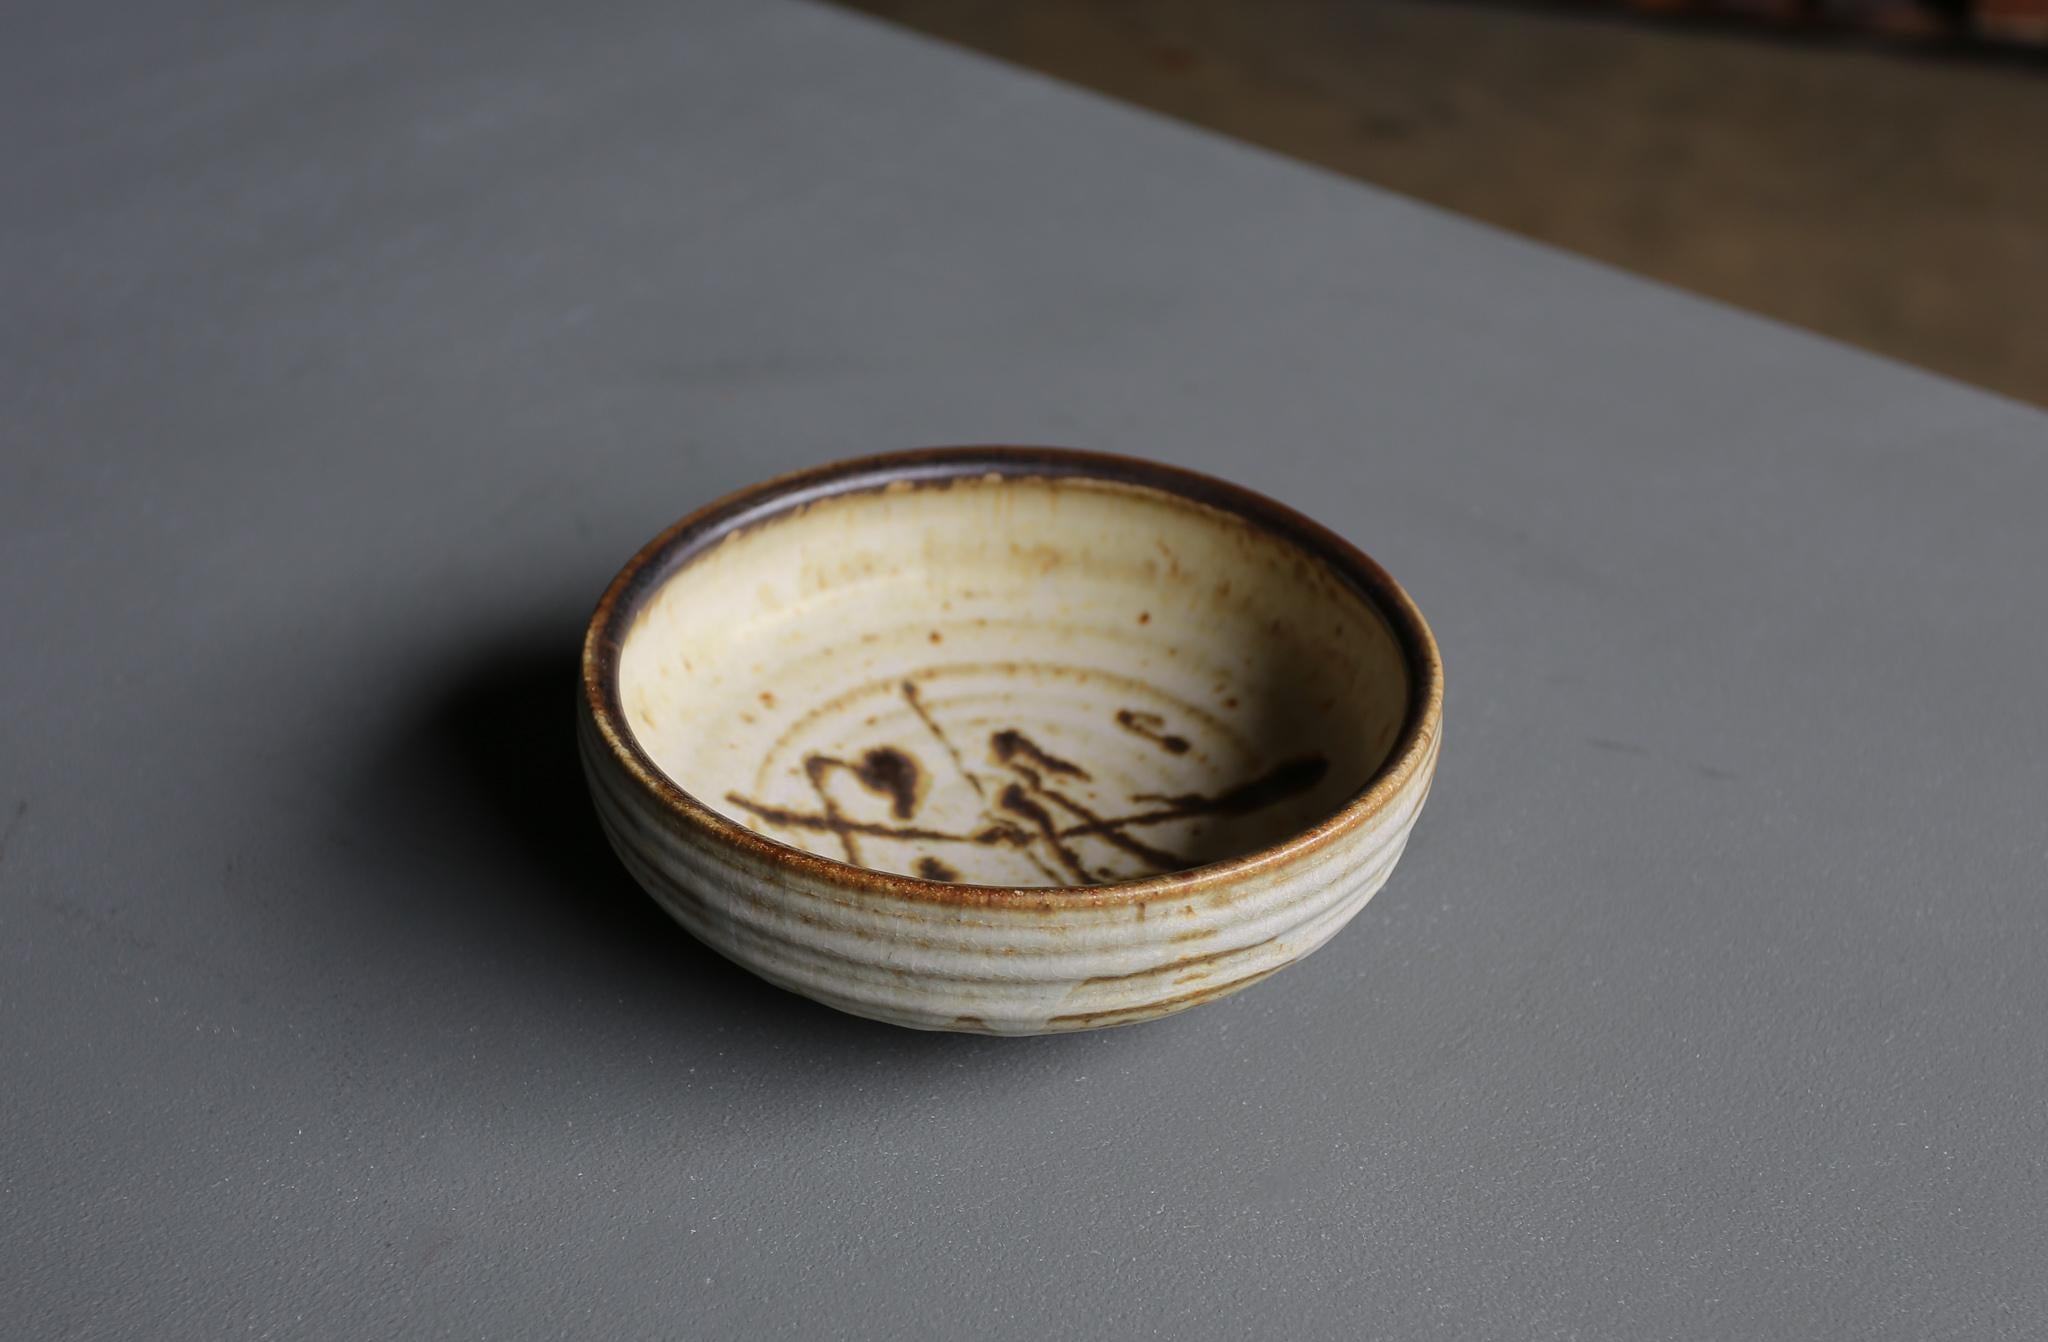 Organic Modern Tim Keenan Ceramic Bowl For Sale